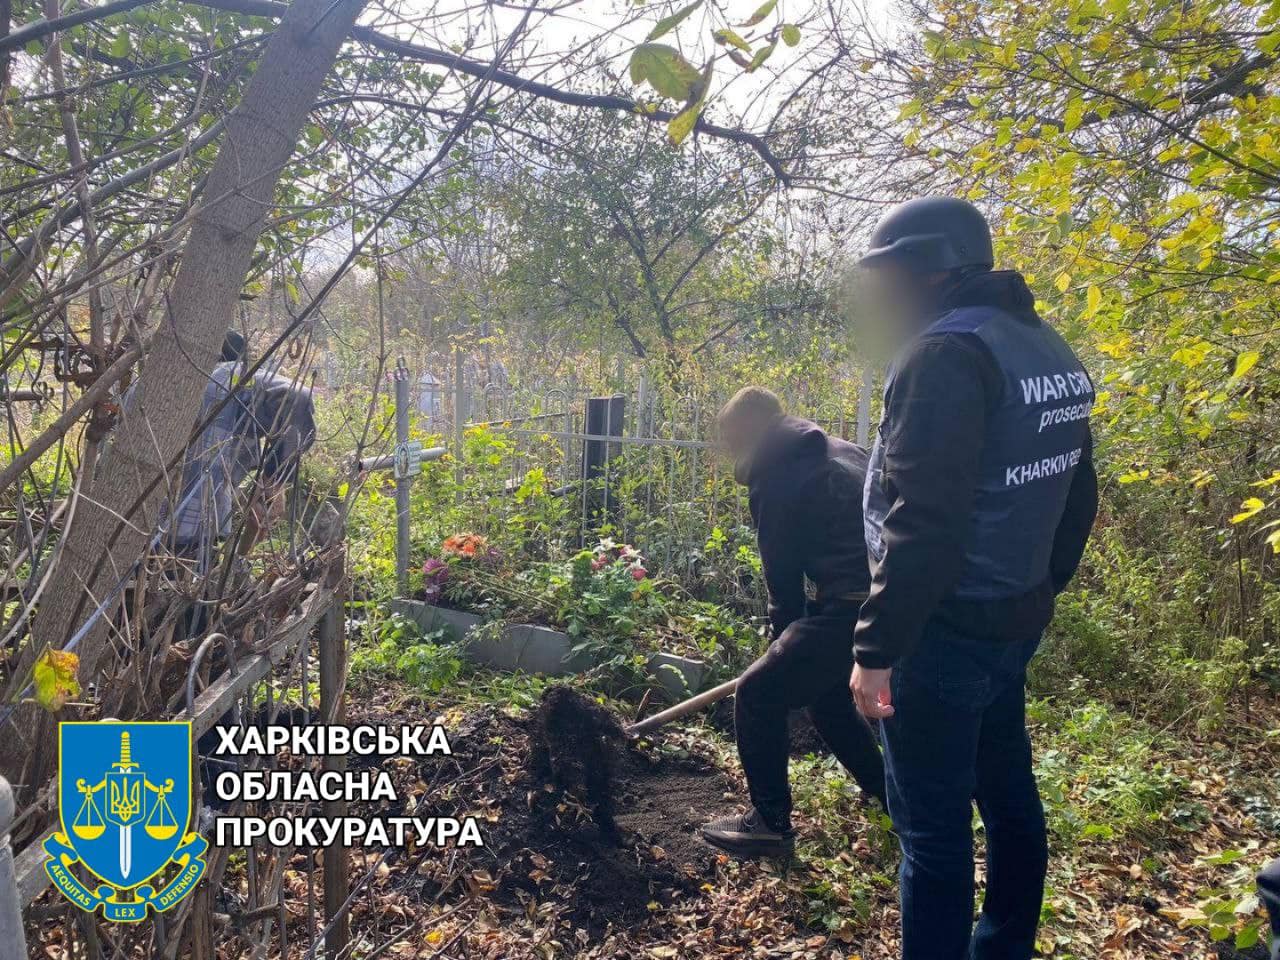 Чергові насильницькі смерті від рук окупантів: на Харківщині знайшли ще два тіла закатованих чоловіків